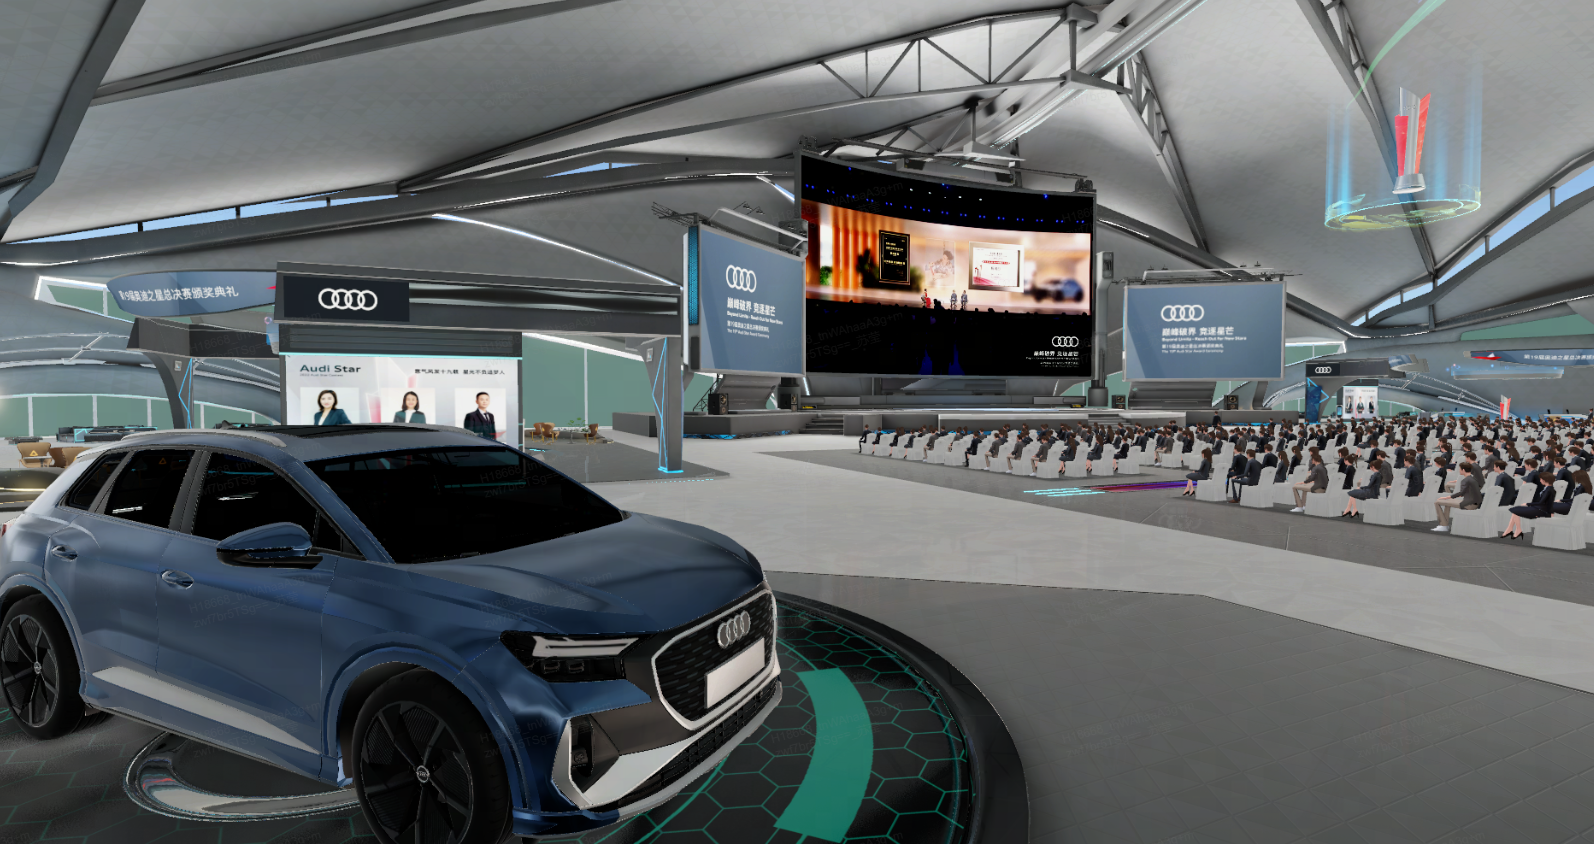 图片展示了一场室内活动，中心有一辆蓝色奥迪汽车，四周安排有座椅，背景是大屏幕和奥迪品牌标识。